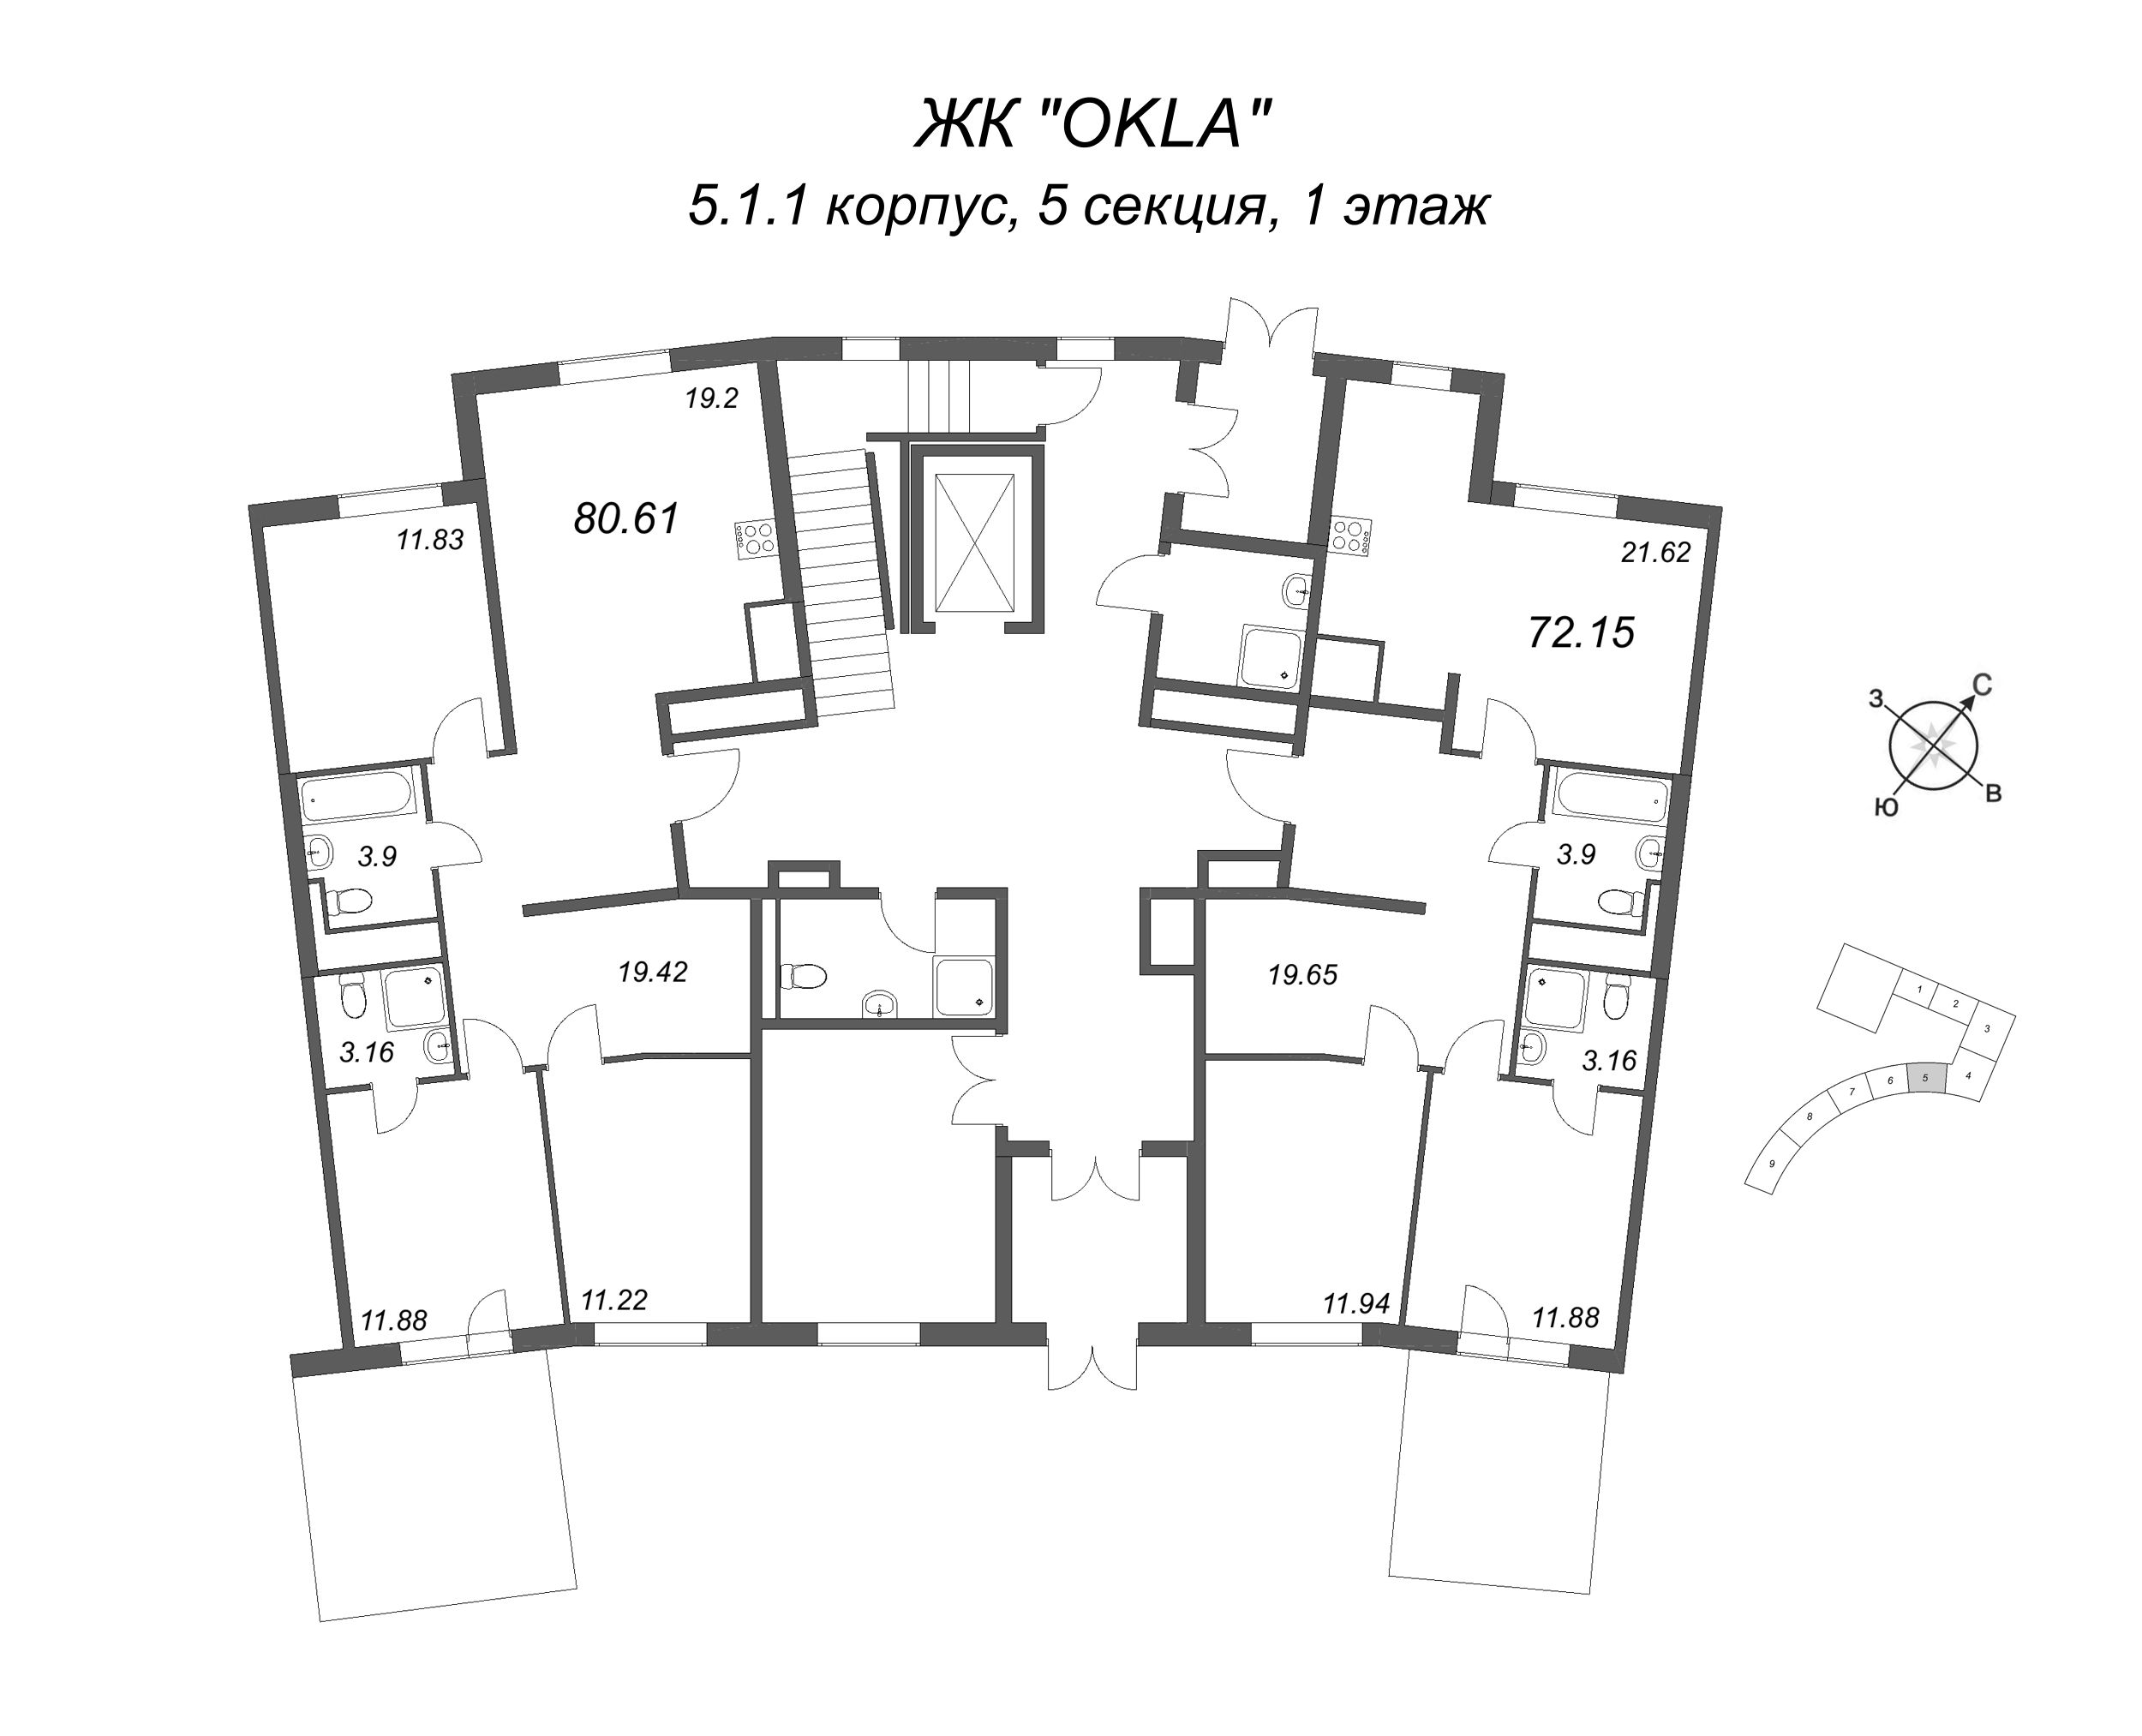 4-комнатная (Евро) квартира, 80.61 м² в ЖК "OKLA" - планировка этажа